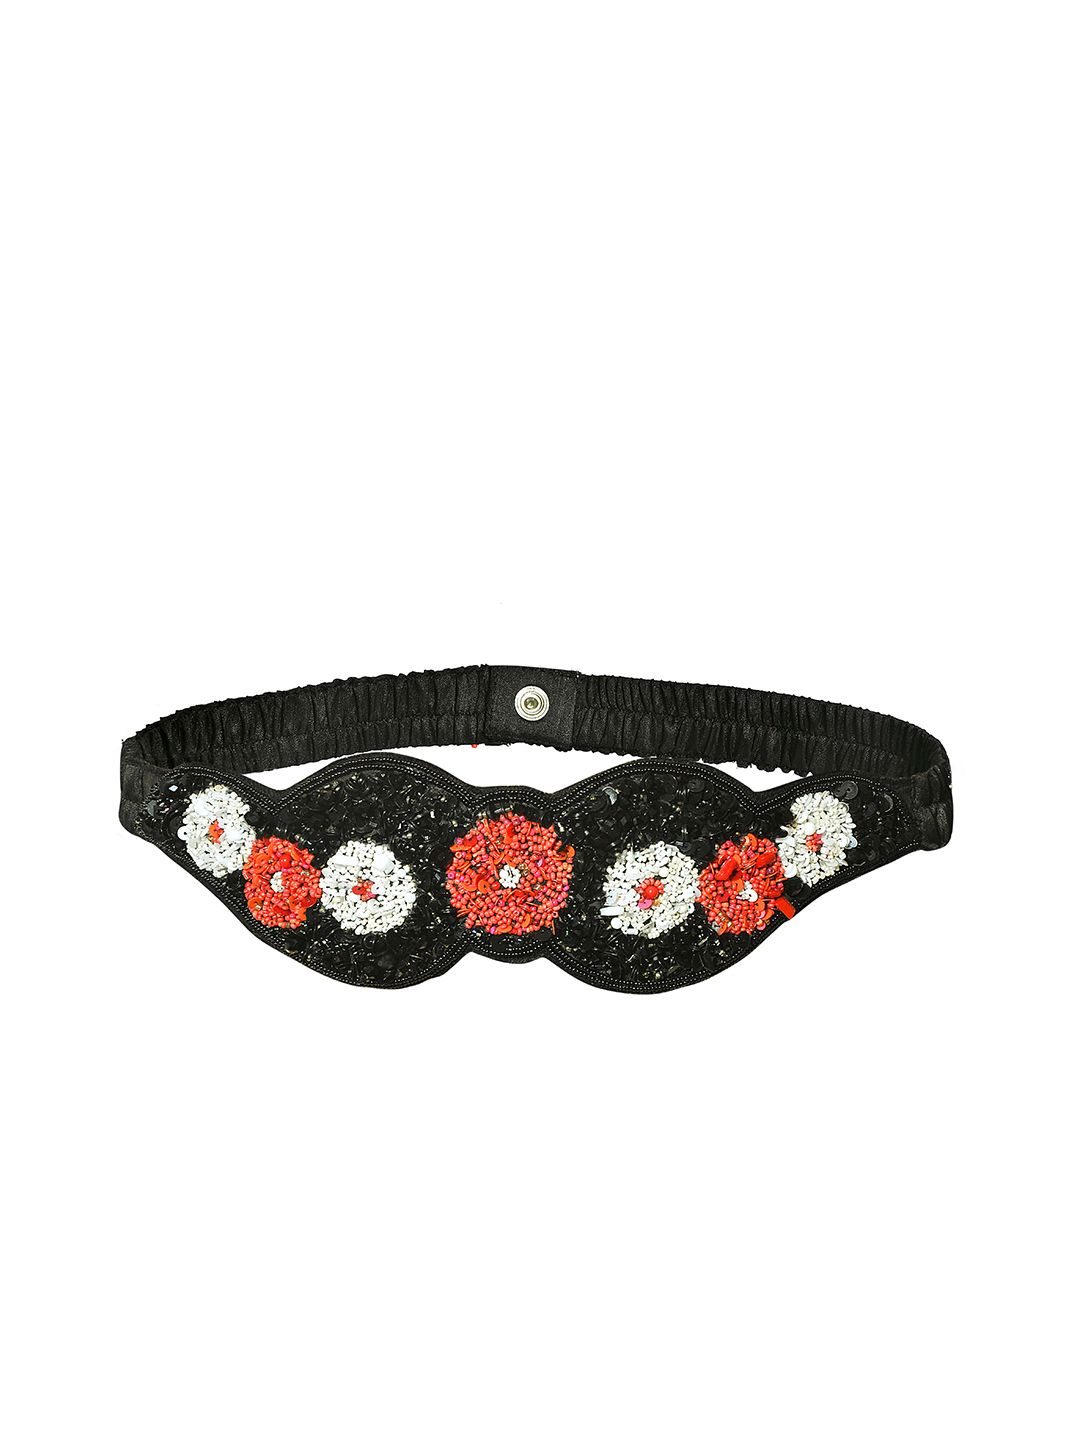 Diwaah Women Black & Red Embellished Belt Price in India